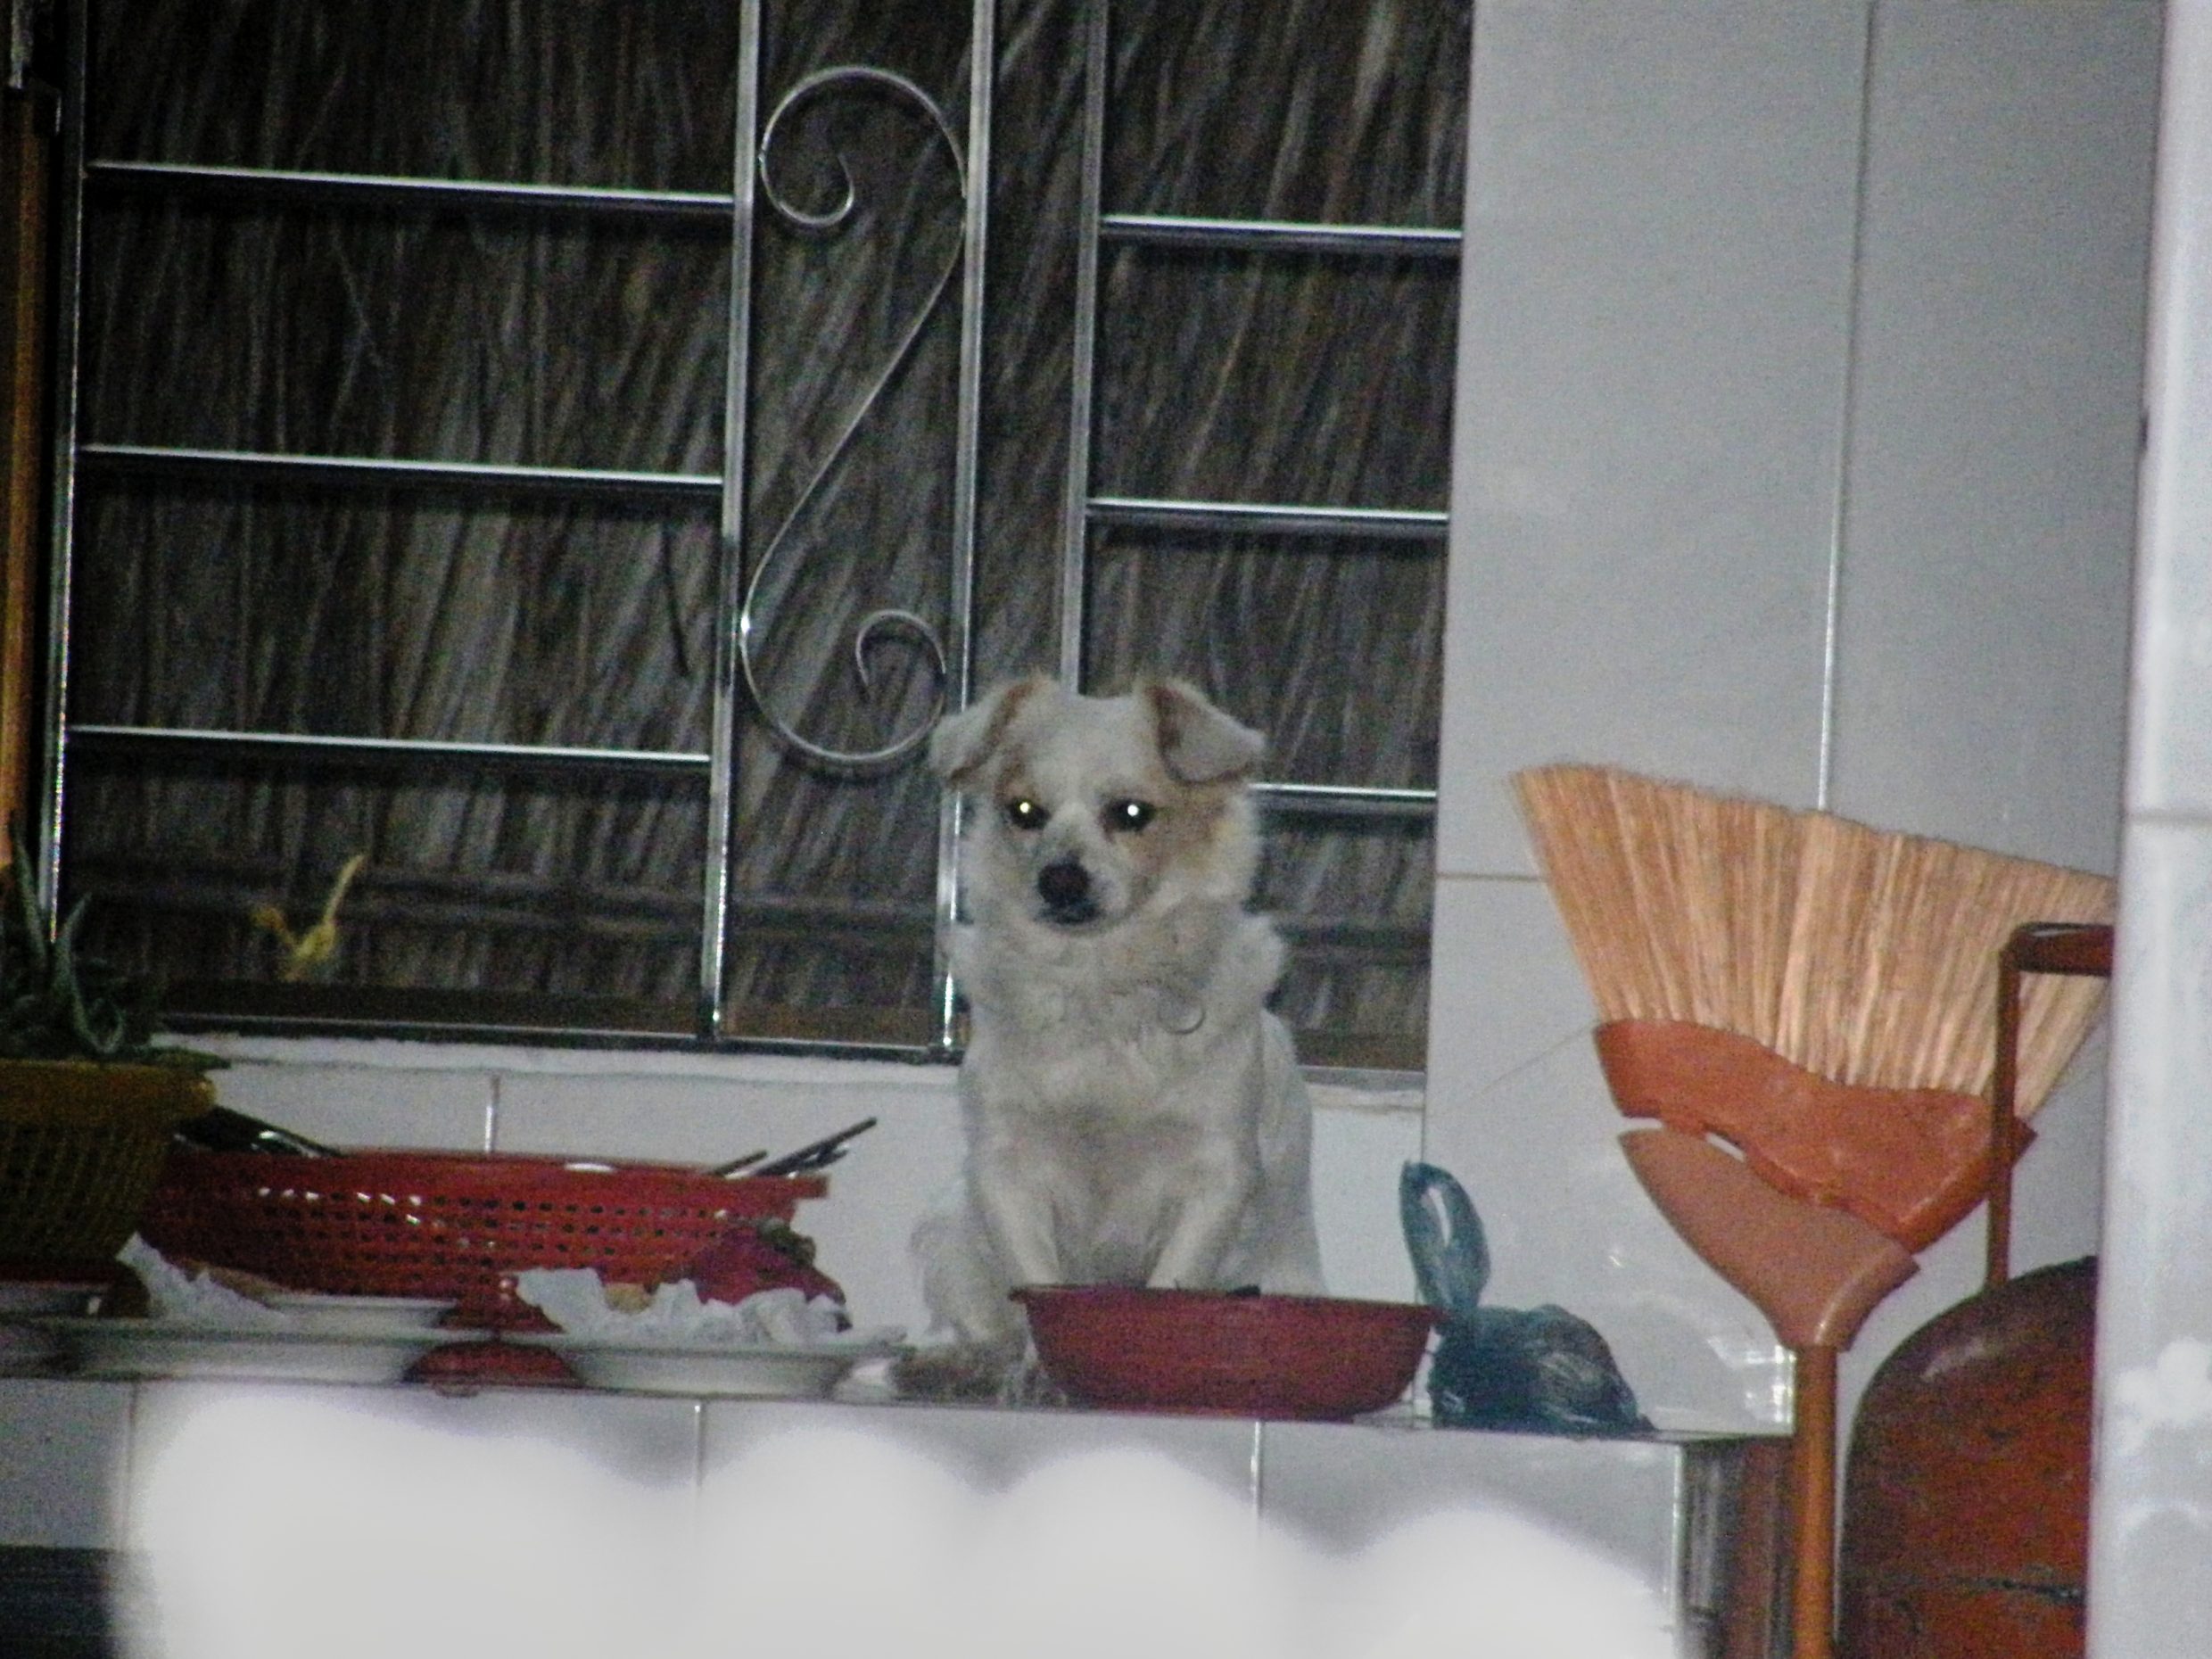 Dog on kitchen bench